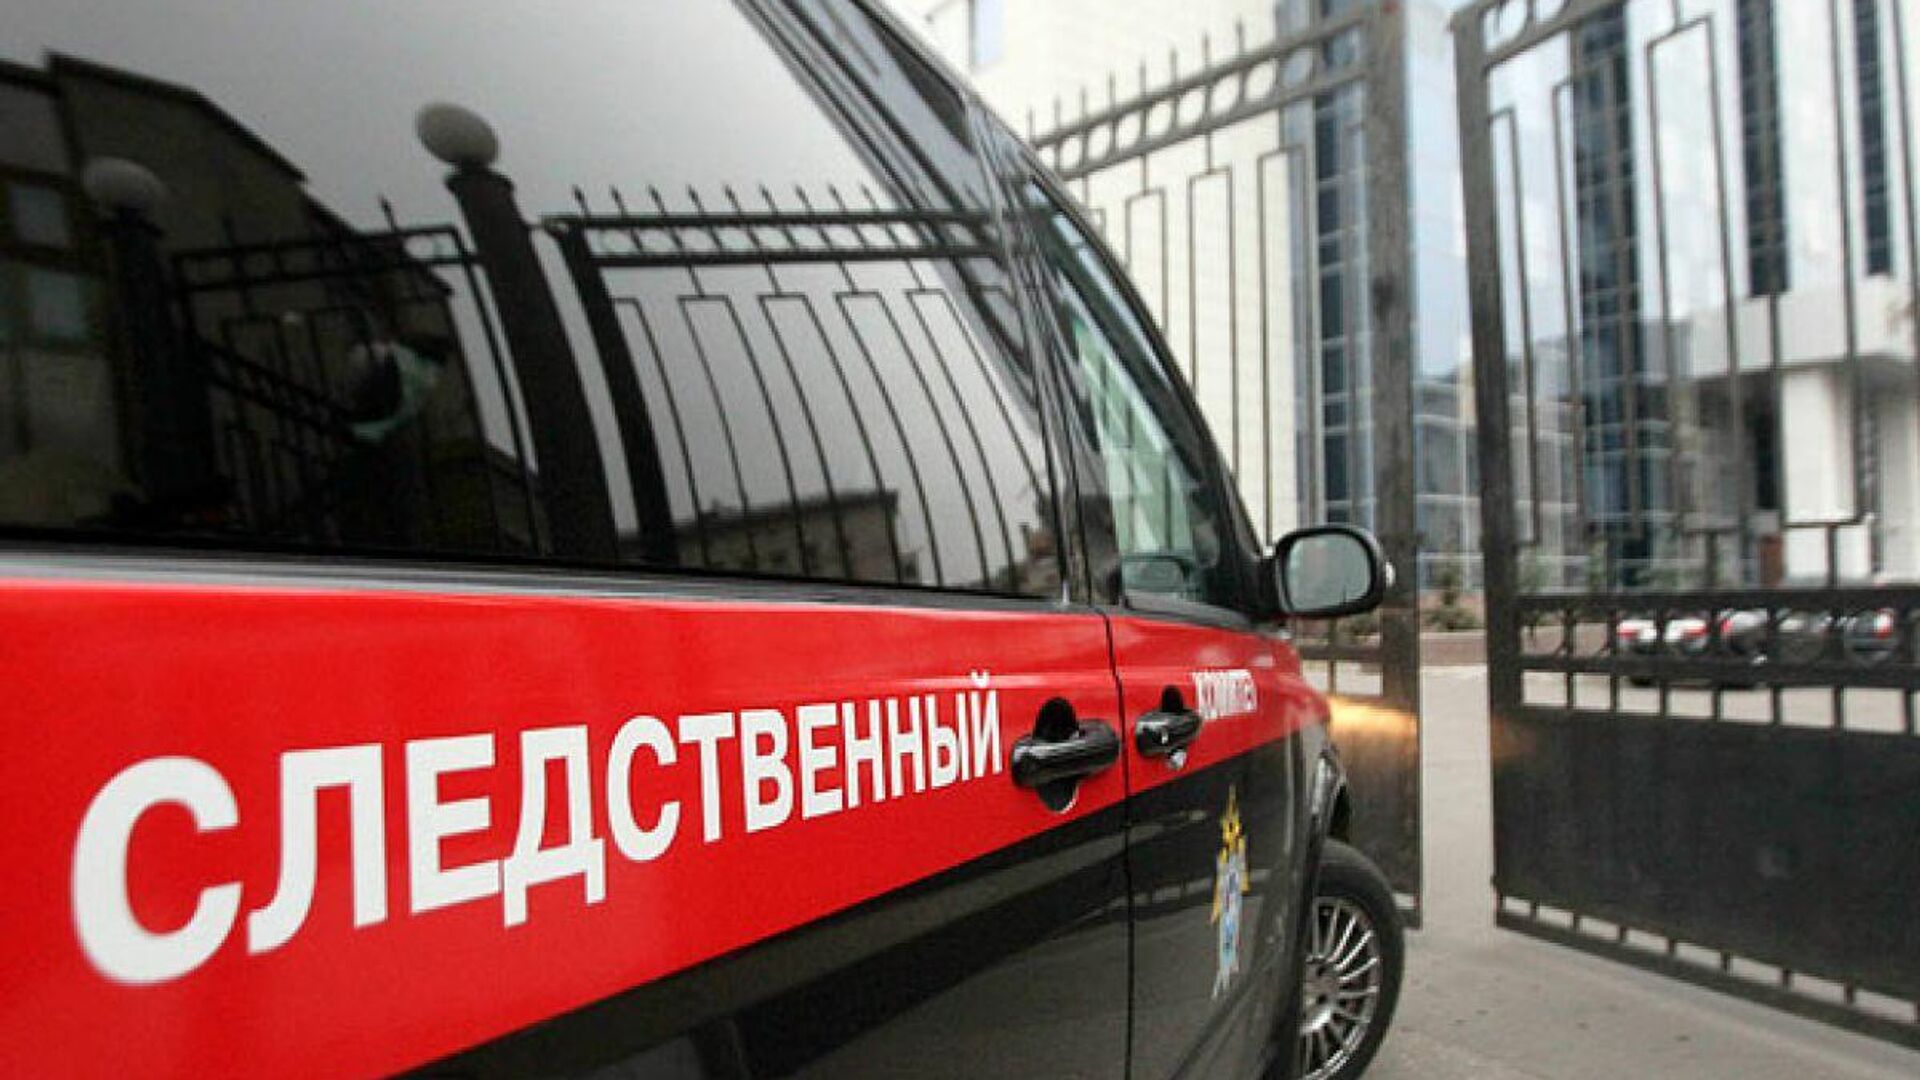 Главе СК доложат о девочке, пострадавшей в картинг-центре в Петербурге